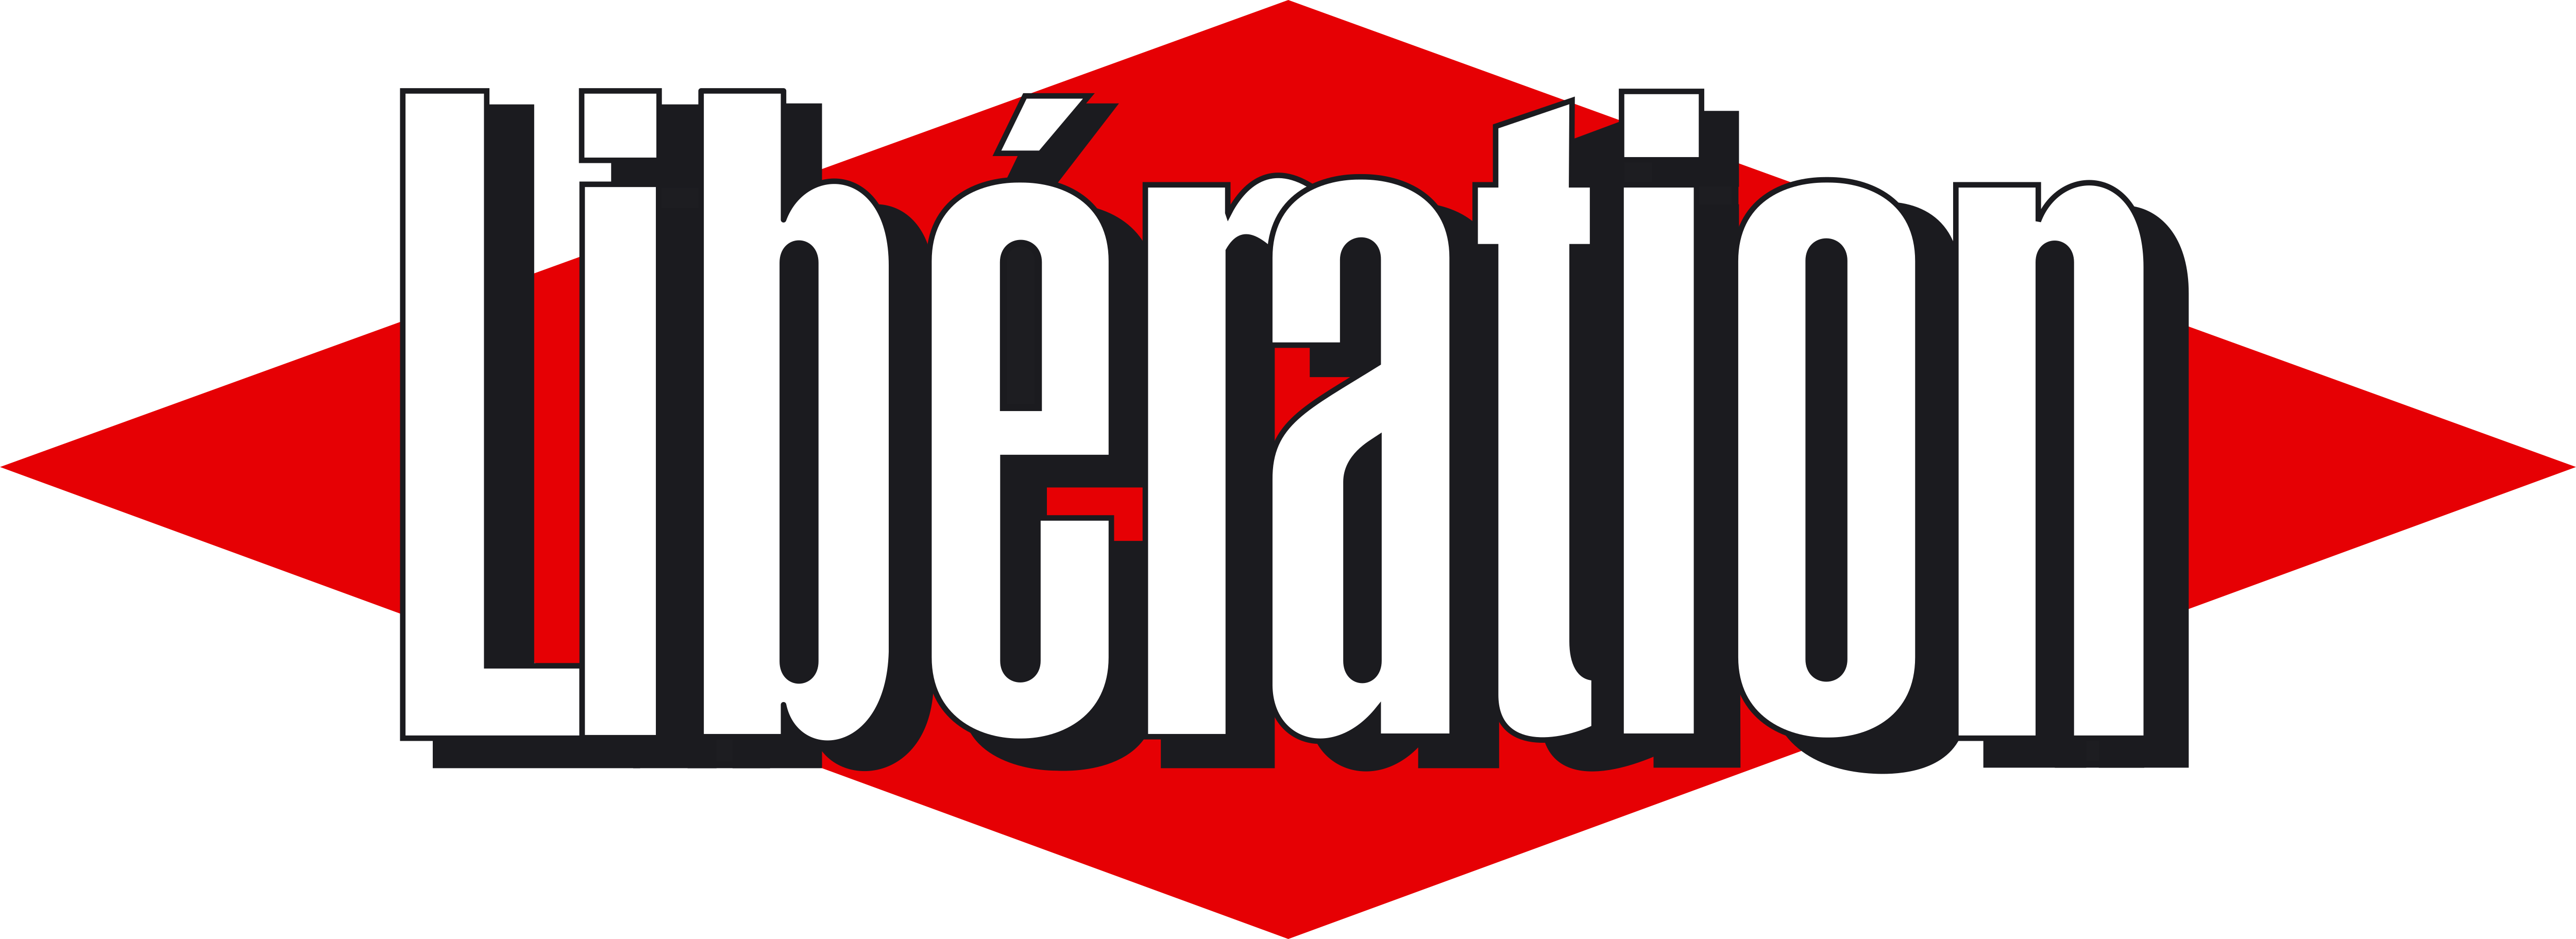 Libération – Logos Download